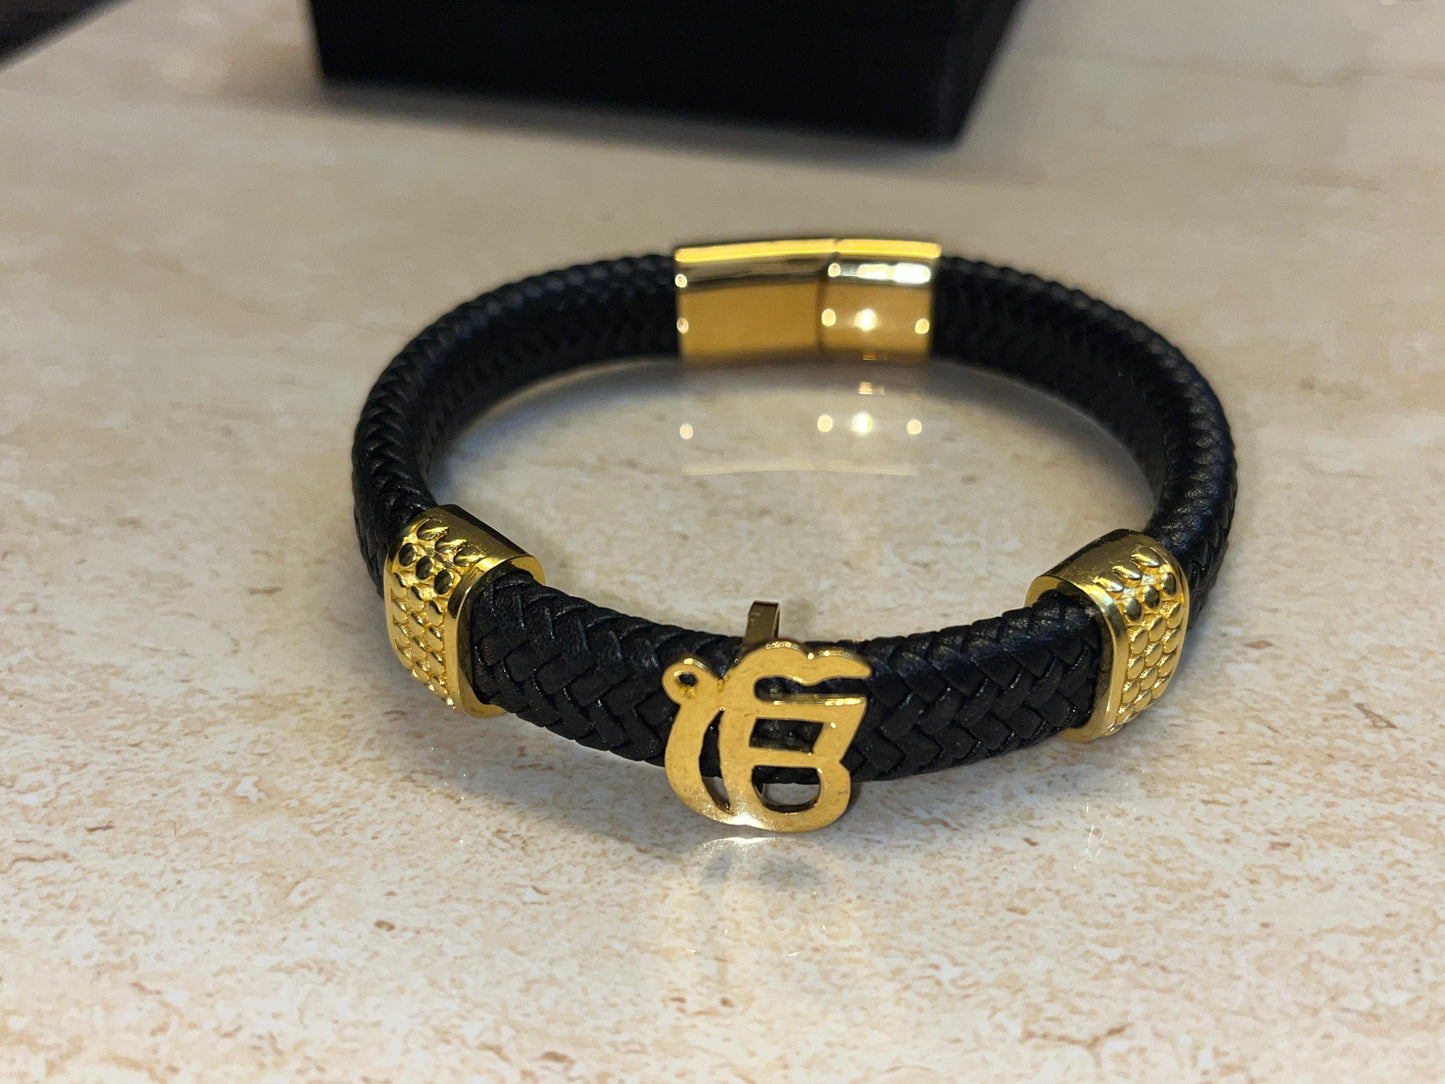 Ekonkar Bracelet in Black German Cord with Gold Plated Loops